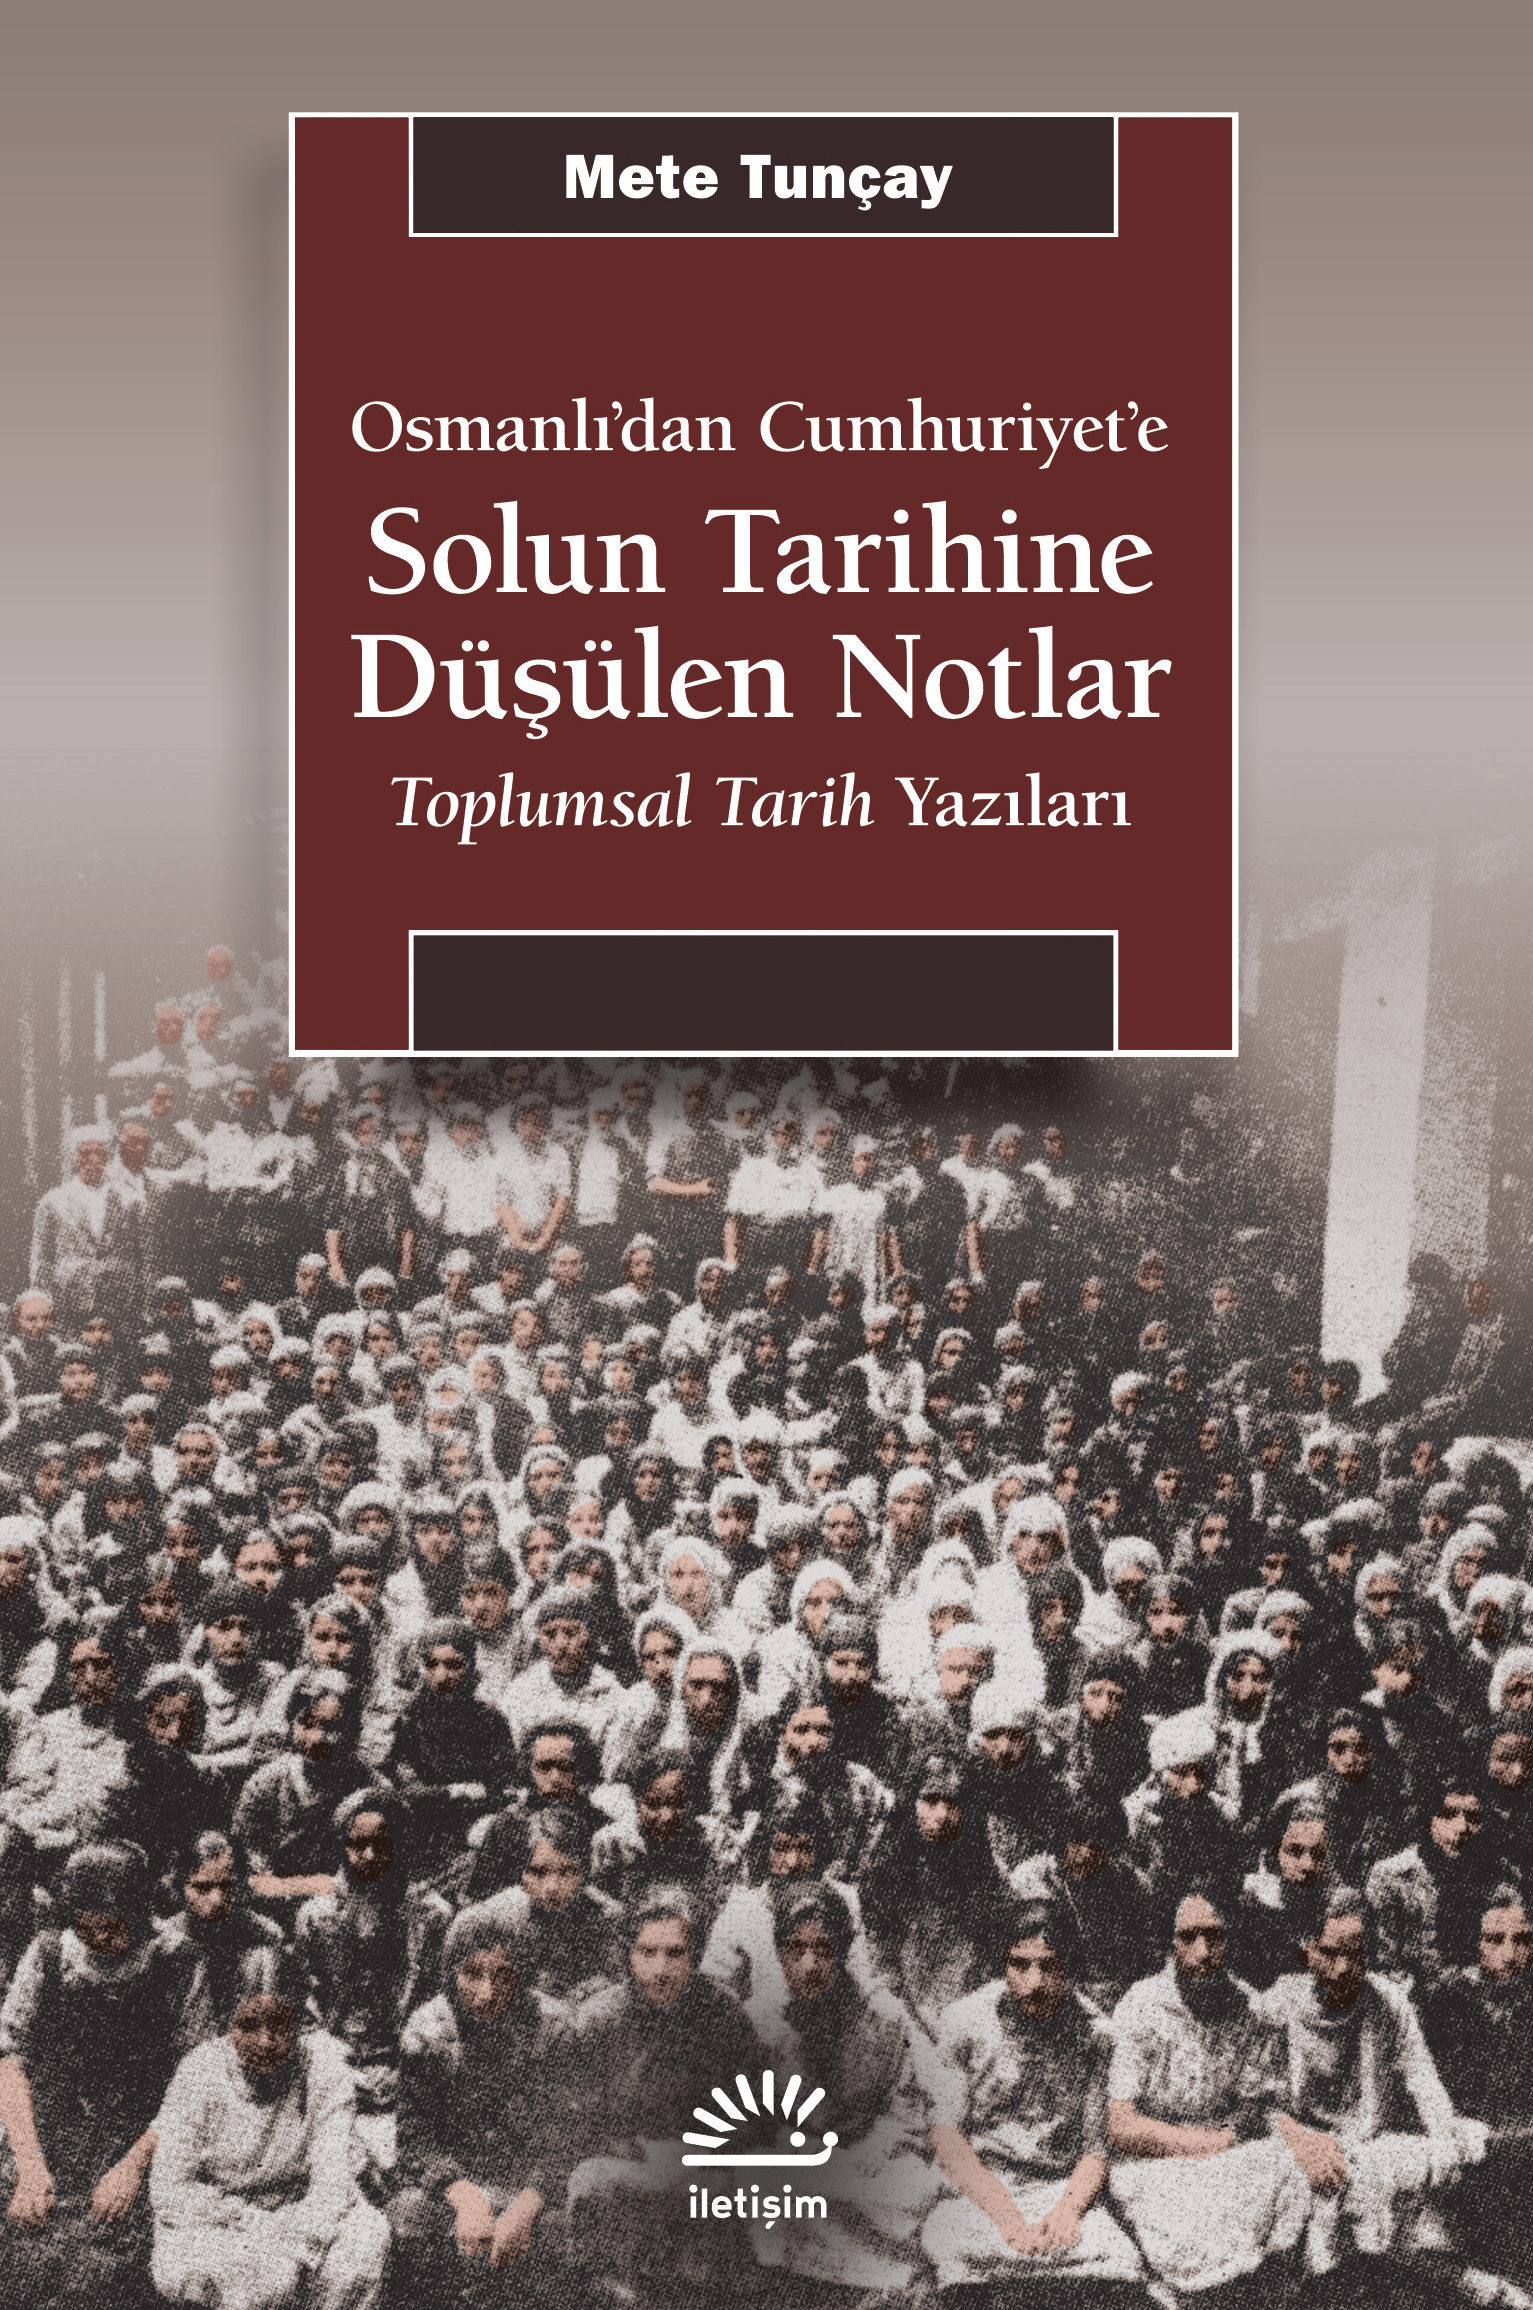 Solun Tarihine Düşülen Notlar Osmanlı'dan Cumhuriyet'e Toplumsal Tarih Yazıları